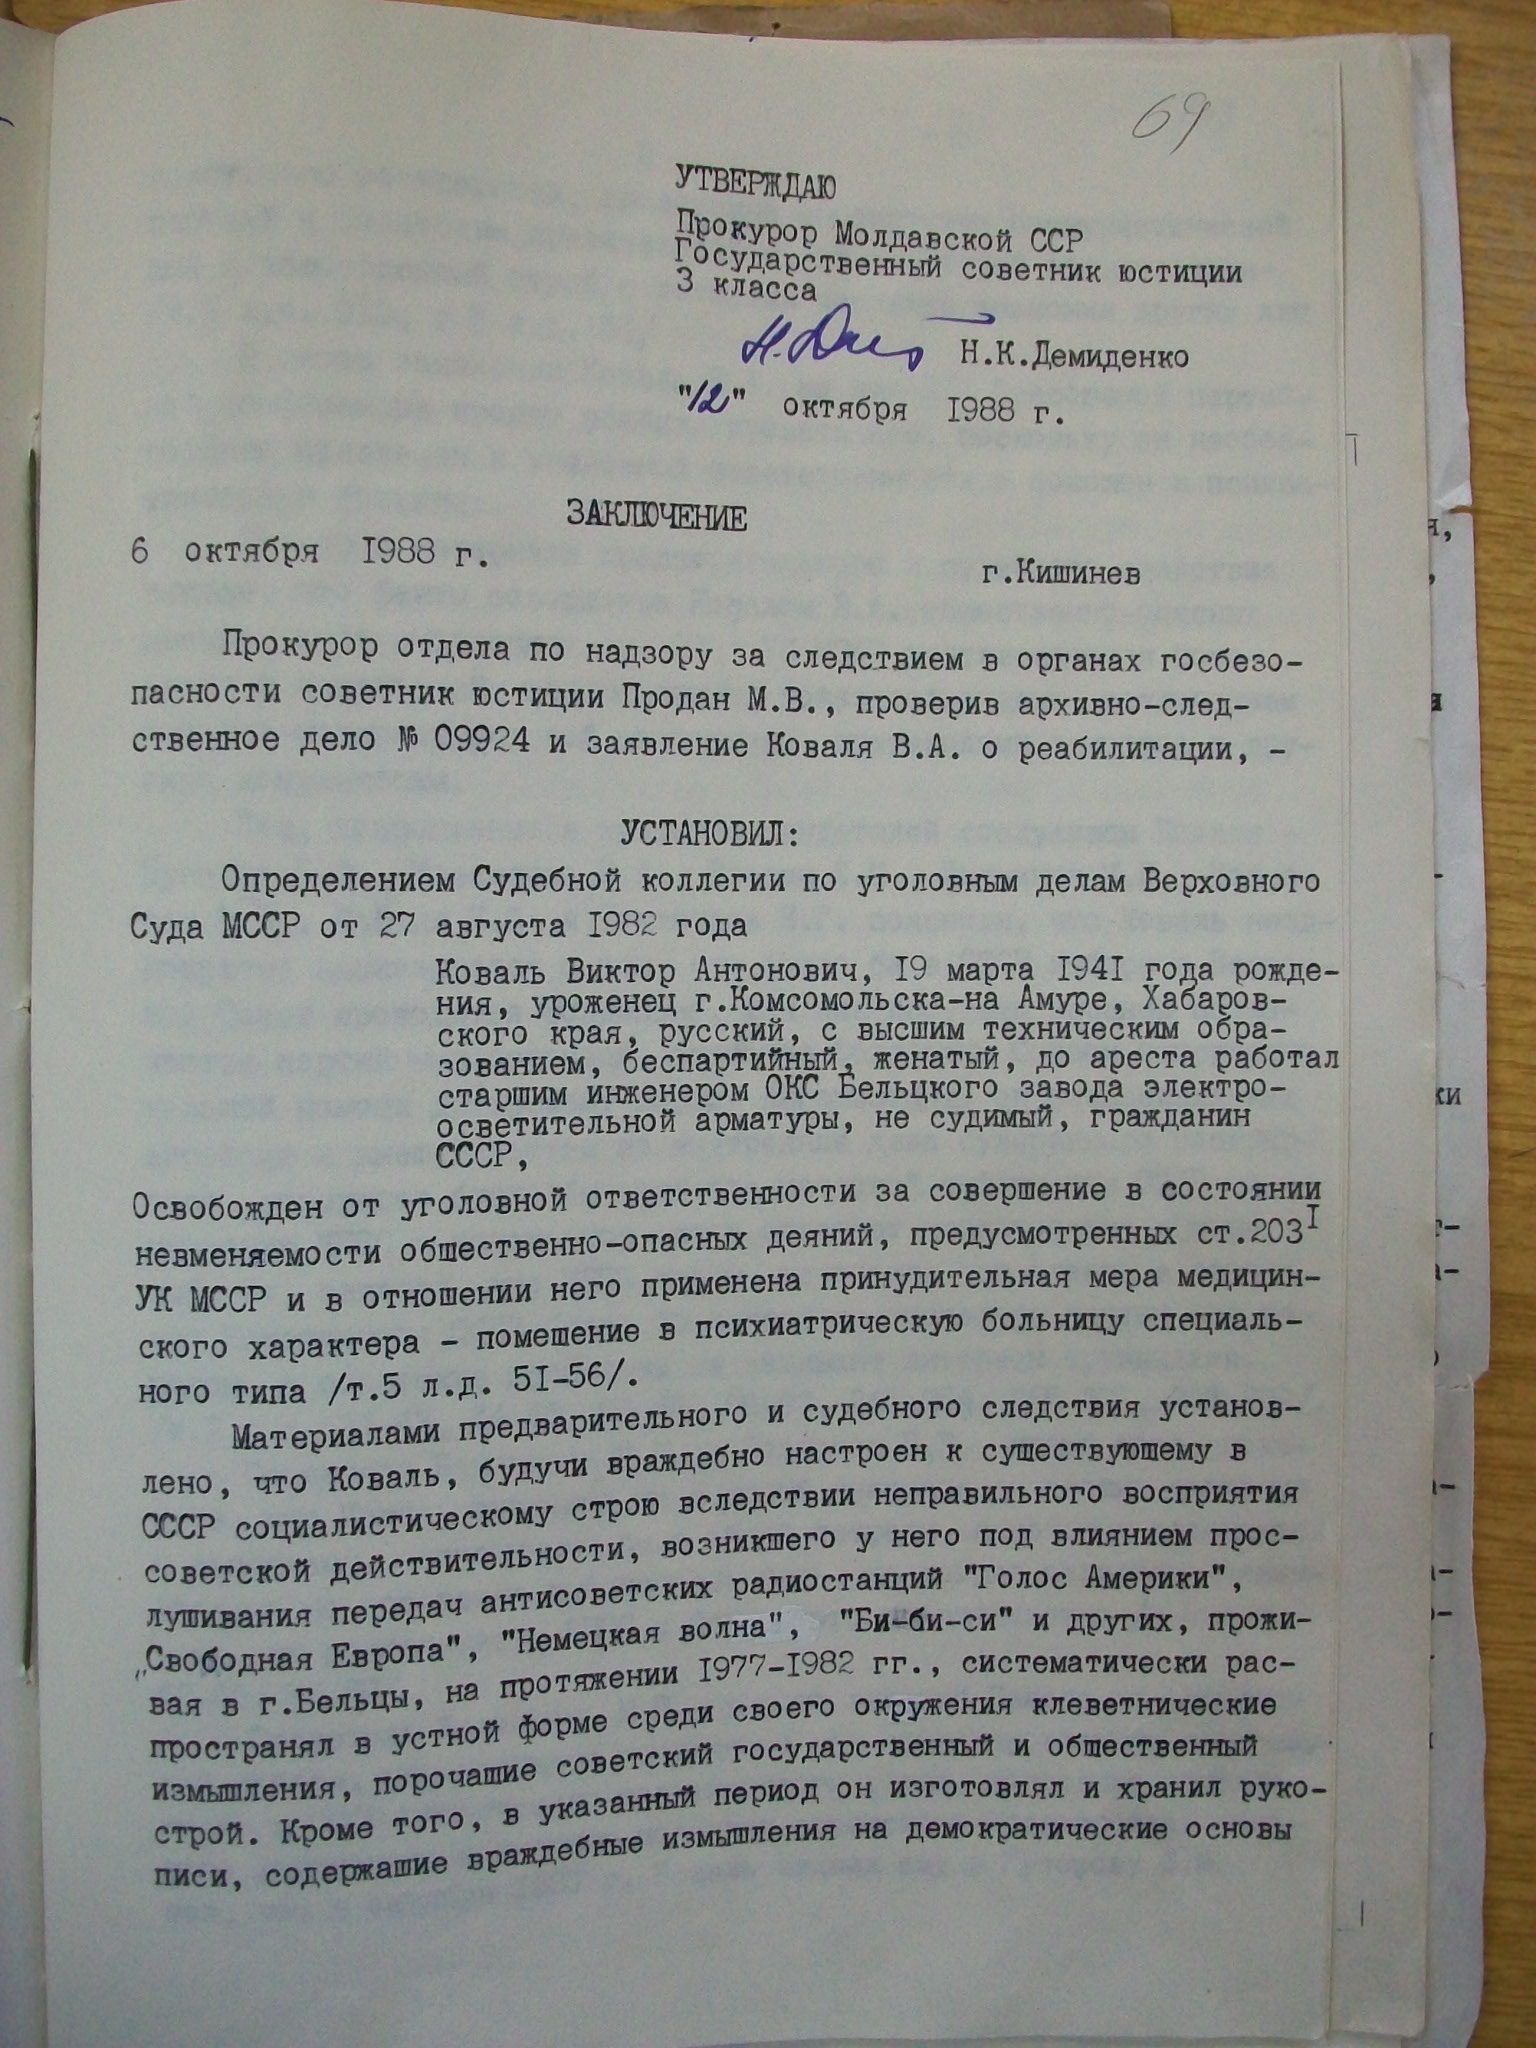 Prima pagină a Încheierii (rezoluției) Procurorului General al RSS Moldovenești în privința petiției lui Viktor Koval